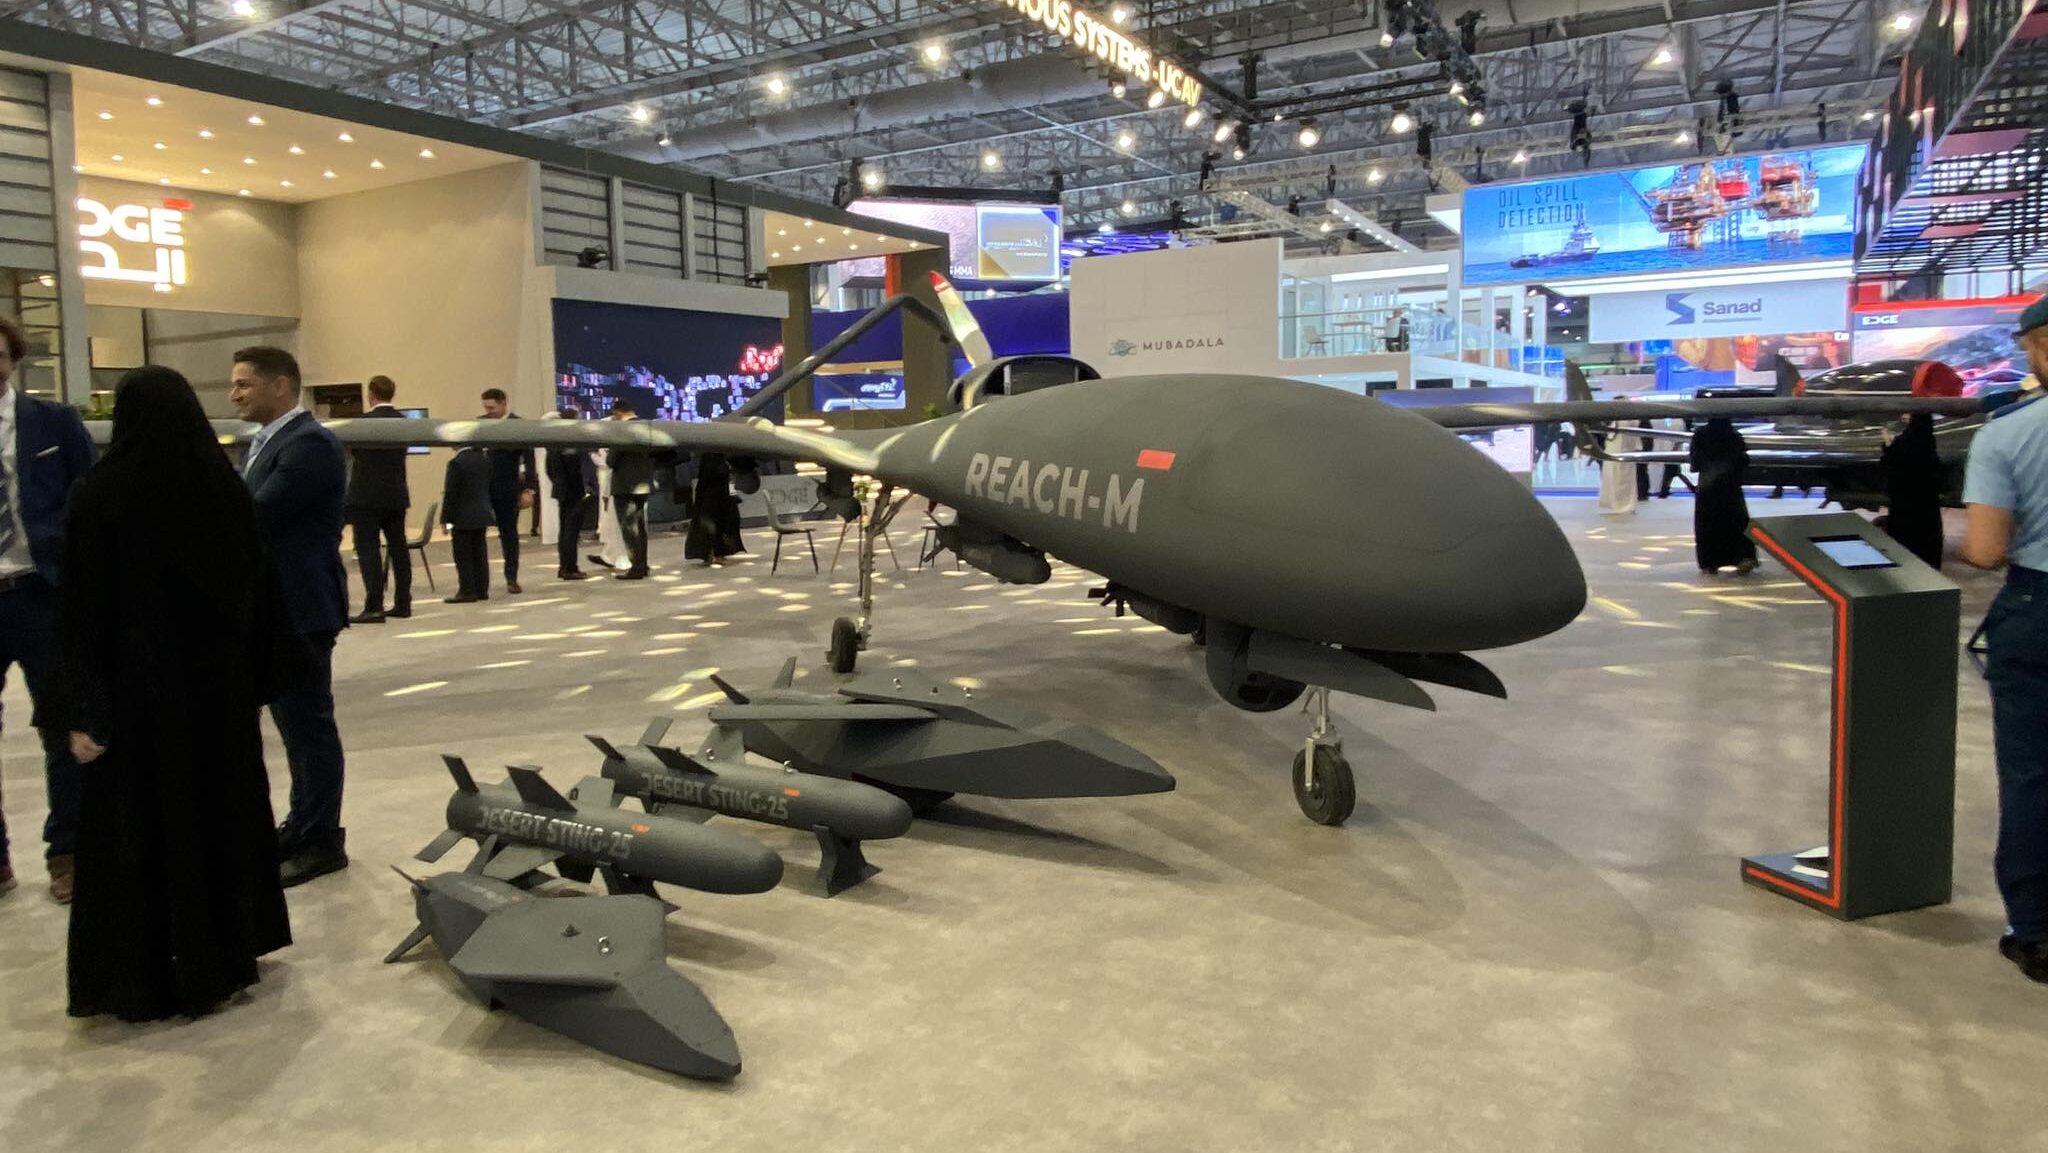 Reach-M UAV at Edge Group stand at Dubai Airshow 2023